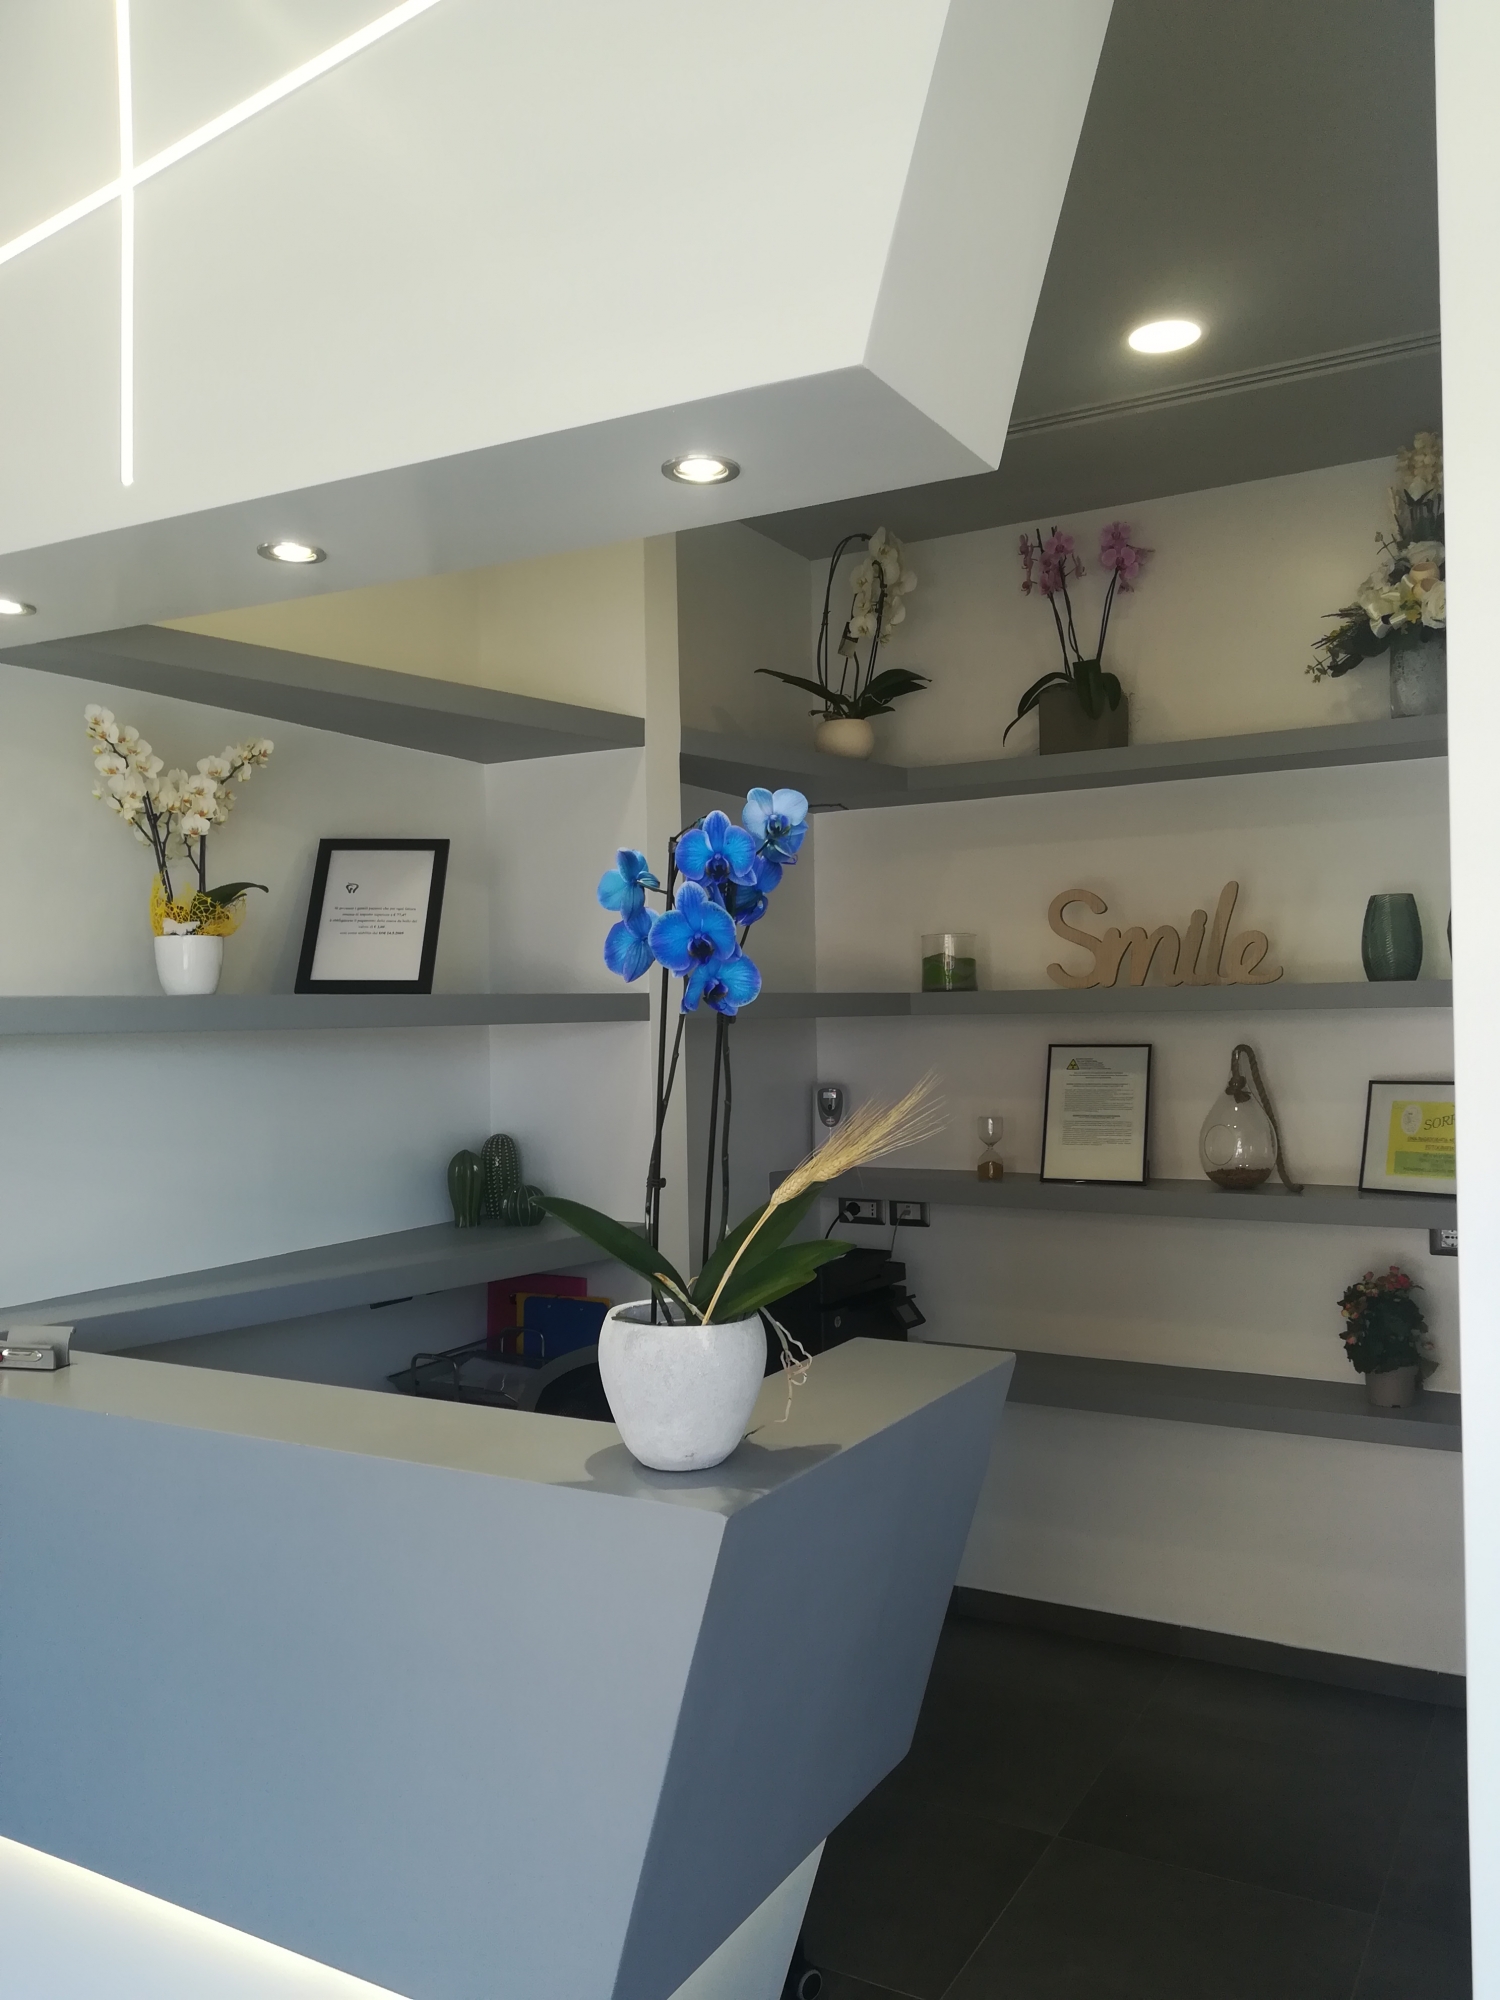 Bancone Reception - back office - studio odontoiatrico progetto - Architetto - Led - soffitto in cartongesso